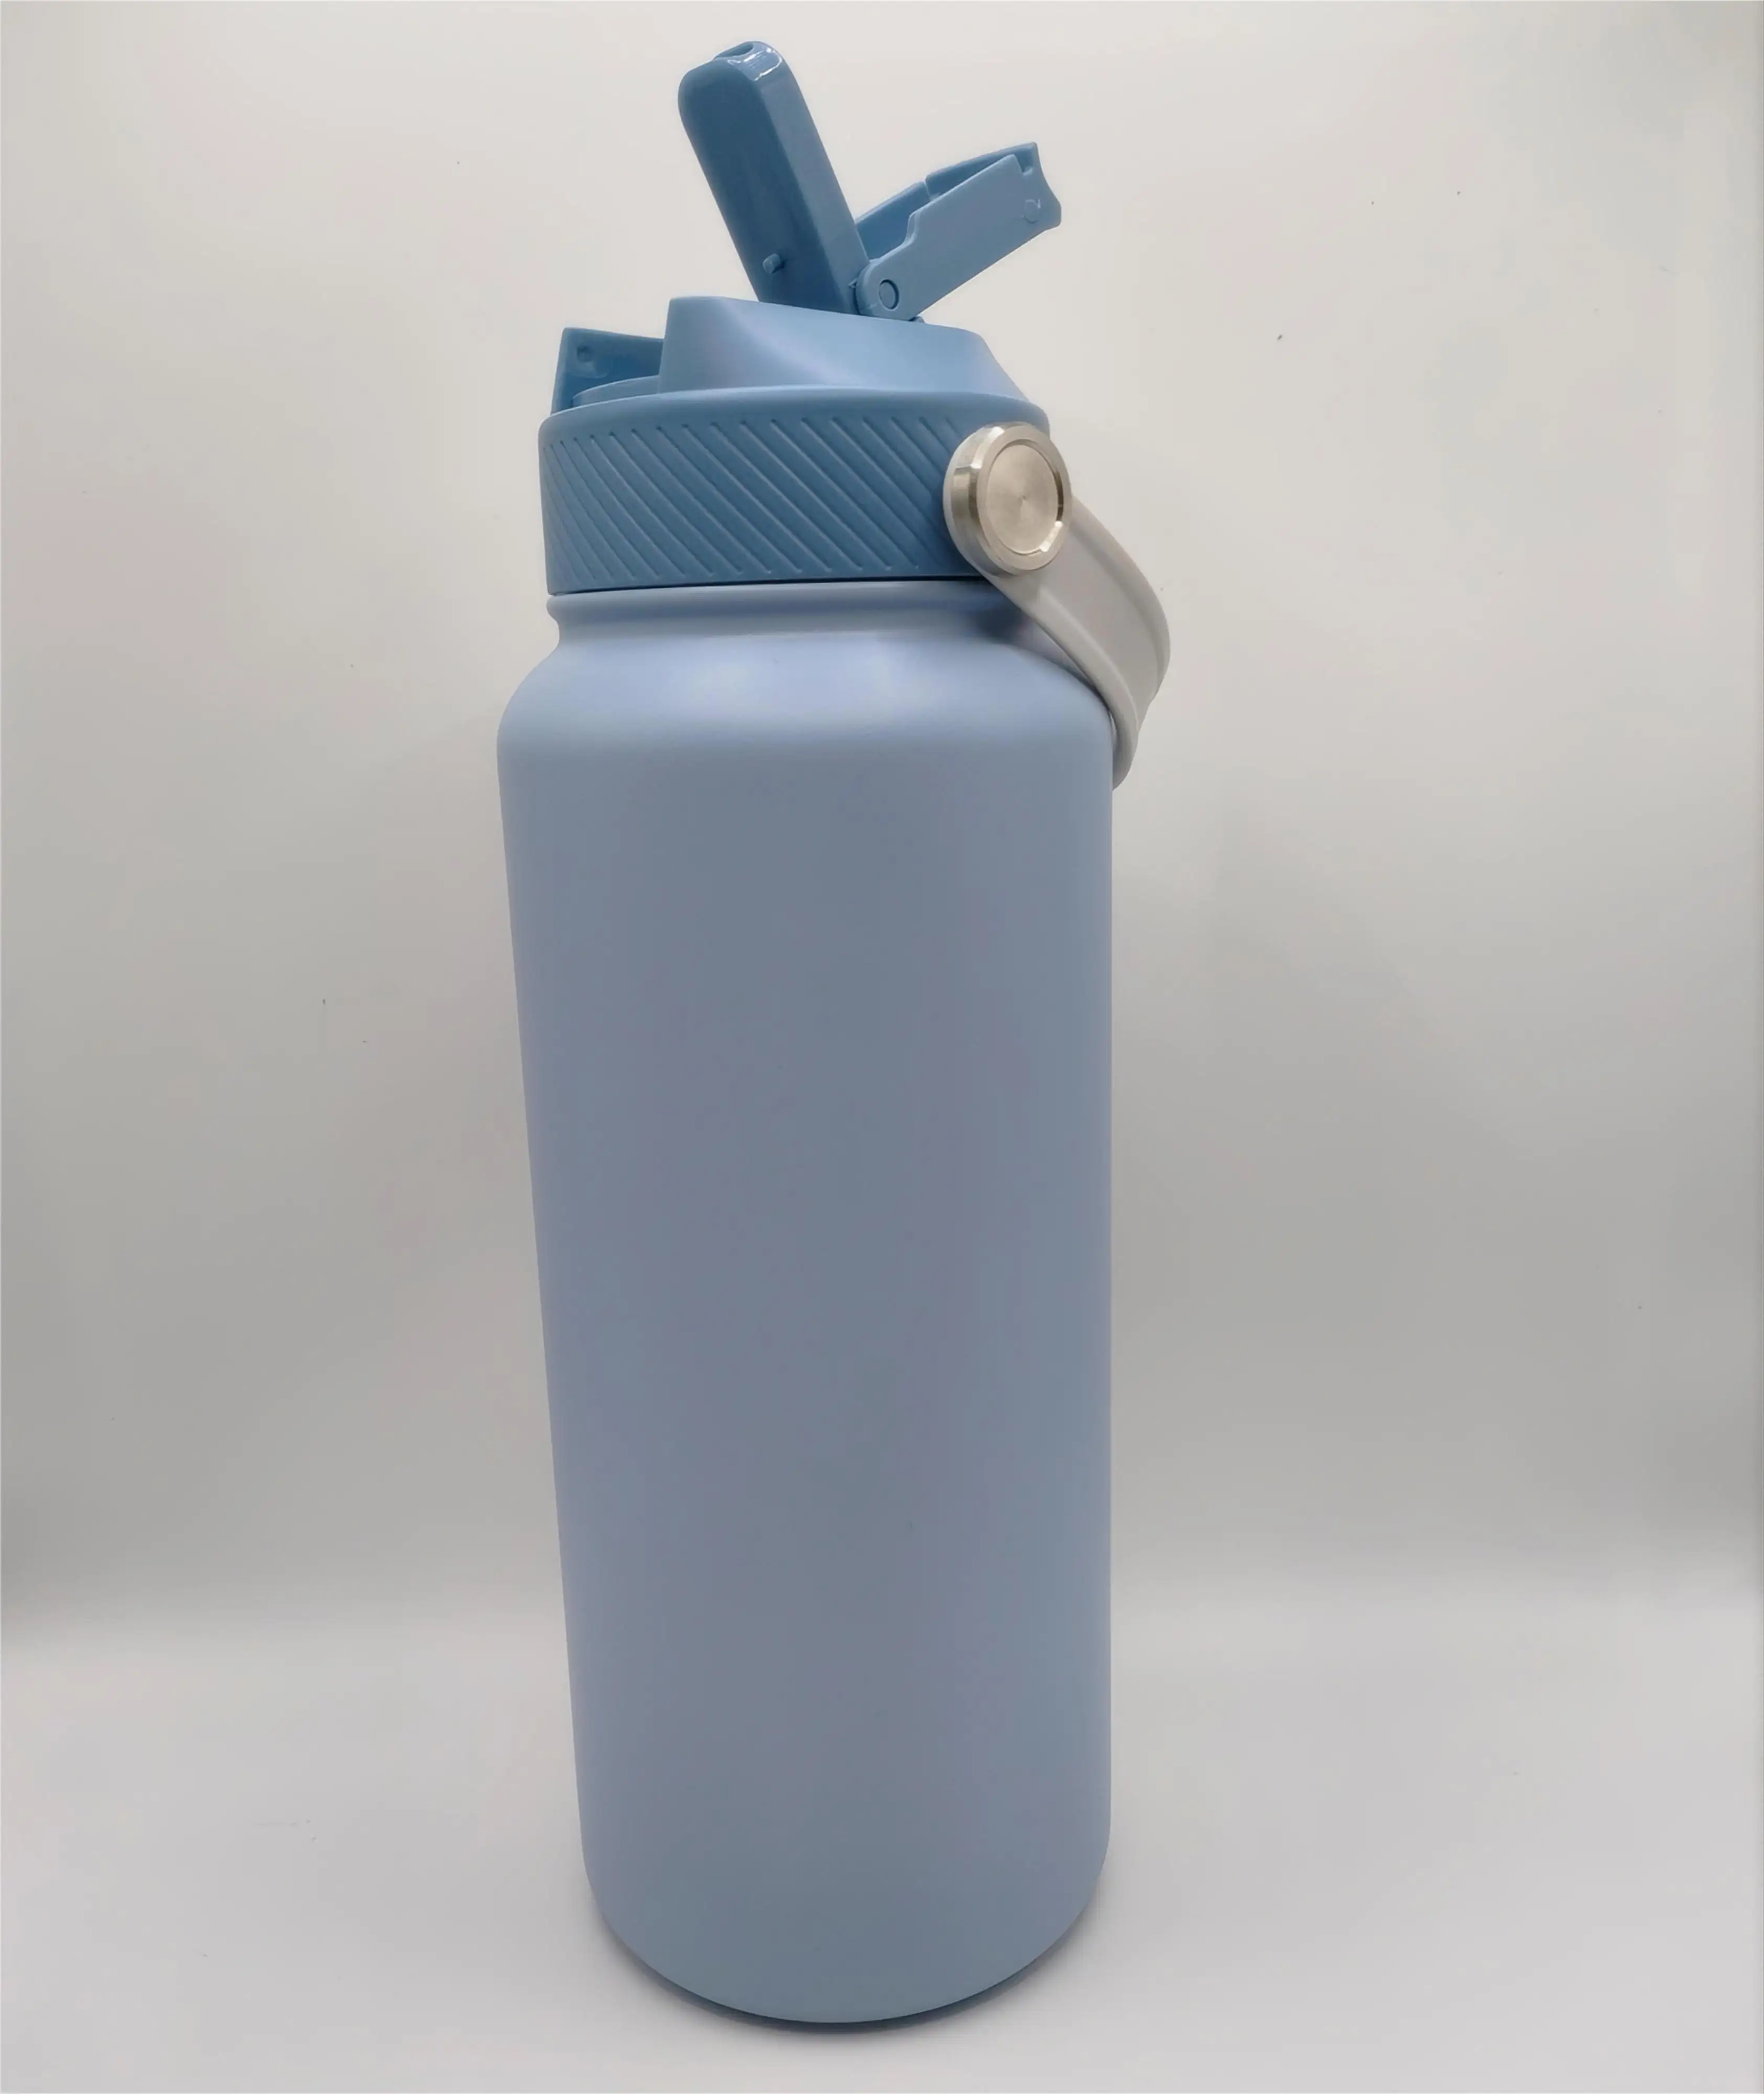 Yeni 316 paslanmaz çelik termos bardak toptan erkek ve kadın spor termo şişe basılabilir logo renk özelleştirme